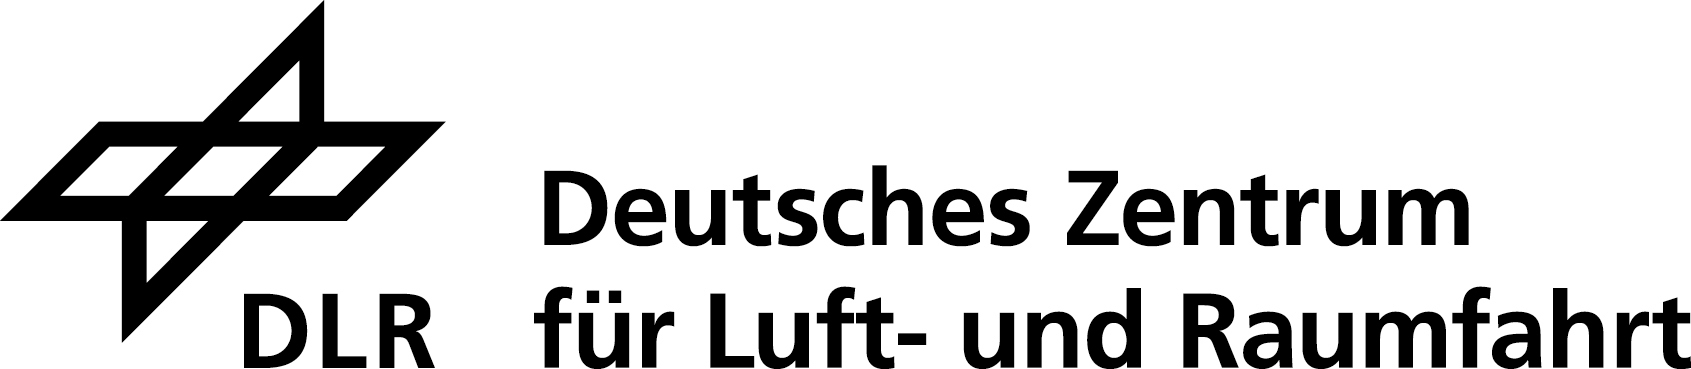 DLR_Logo_schwarz.jpg